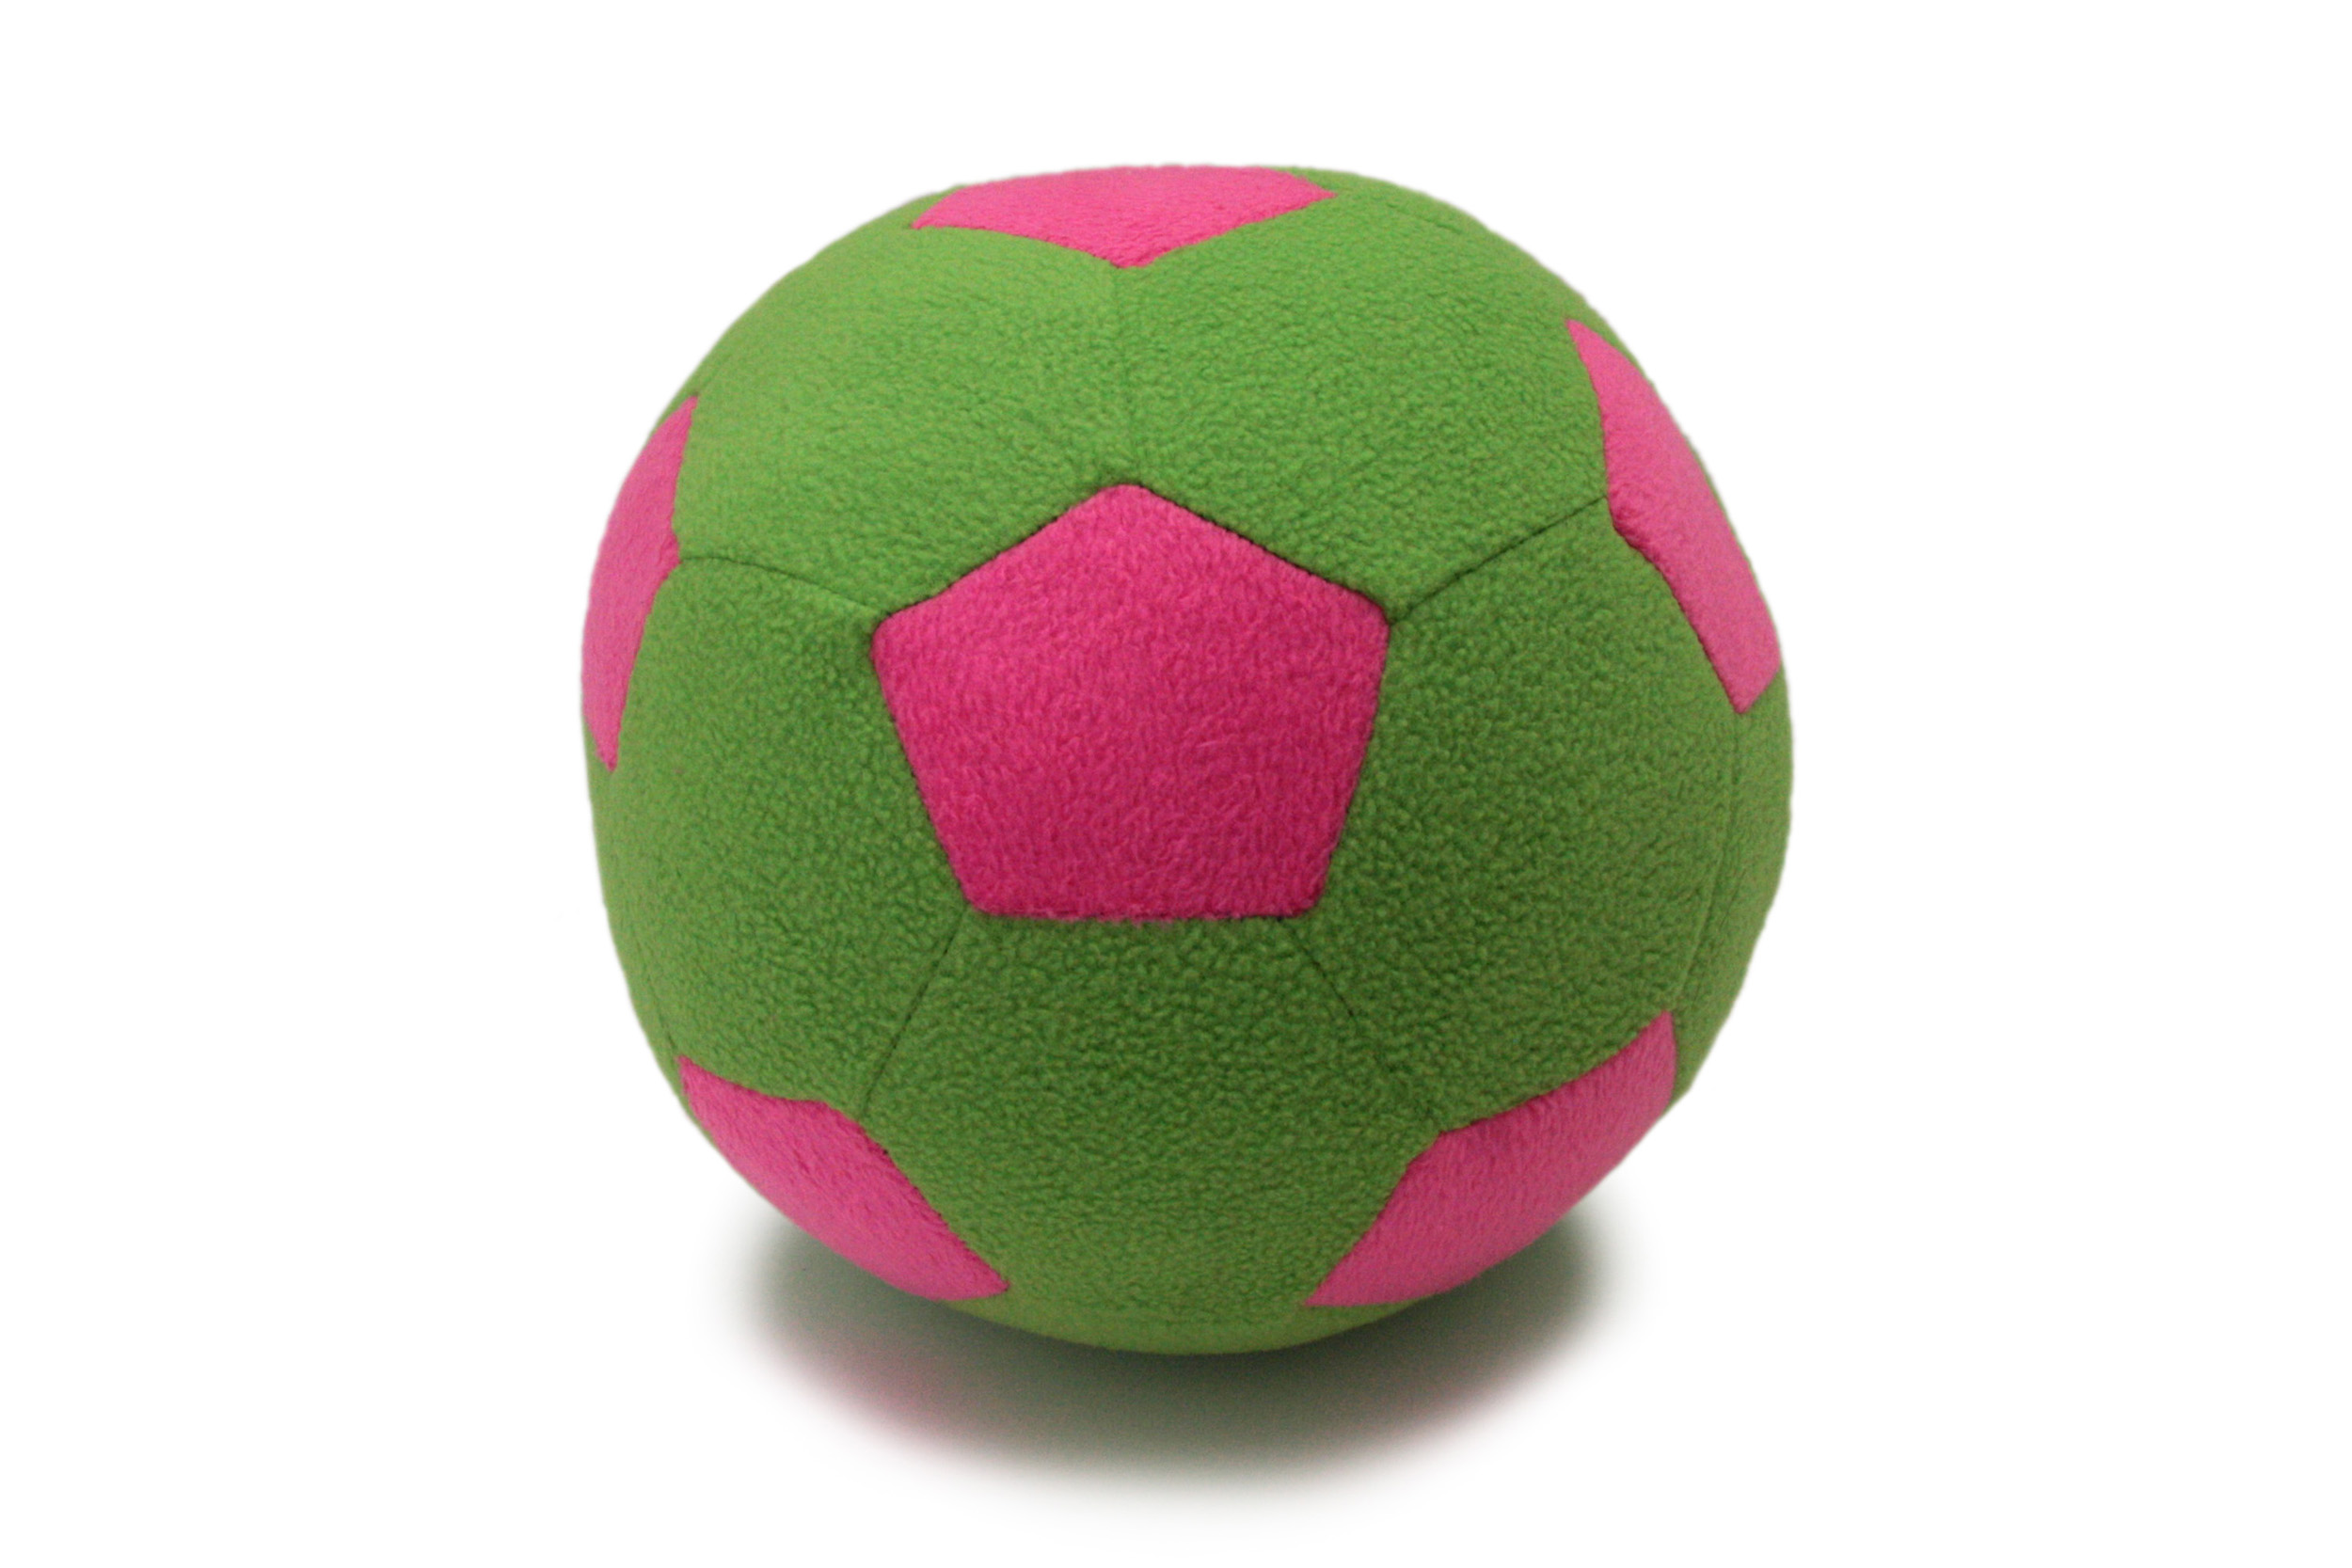 Детский мяч Magic Bear Toys F-100/LGP Мяч мягкий цвет светло-зеленый, розовый 23 см мягкая игрушка magic bear toys мишка кейн 25см 51054 11 серый